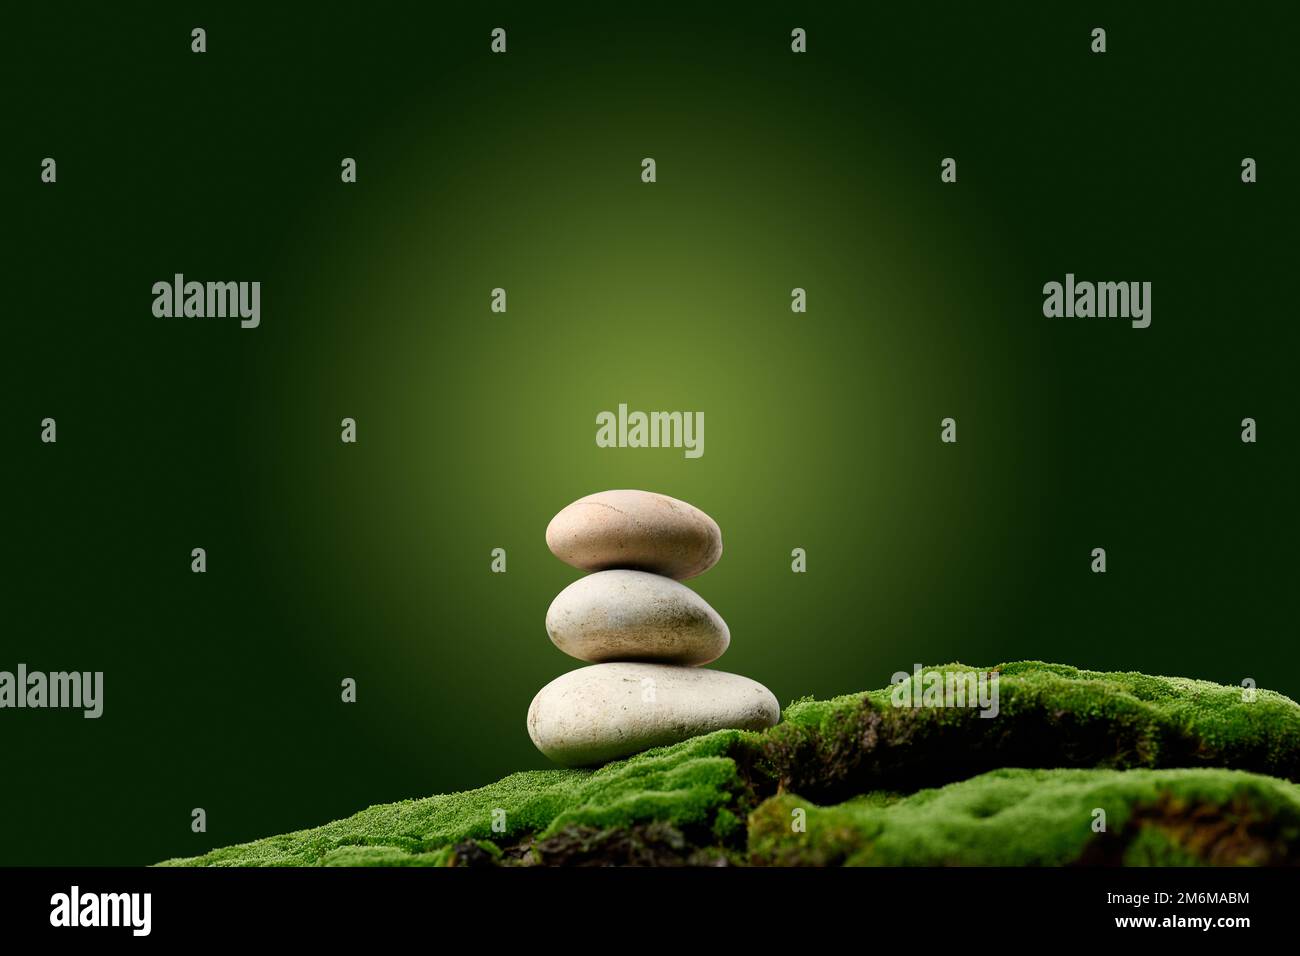 Stapel runder Steine auf grünem Moos, grüner Hintergrund. Podium, um Produkte zu präsentieren Stockfoto